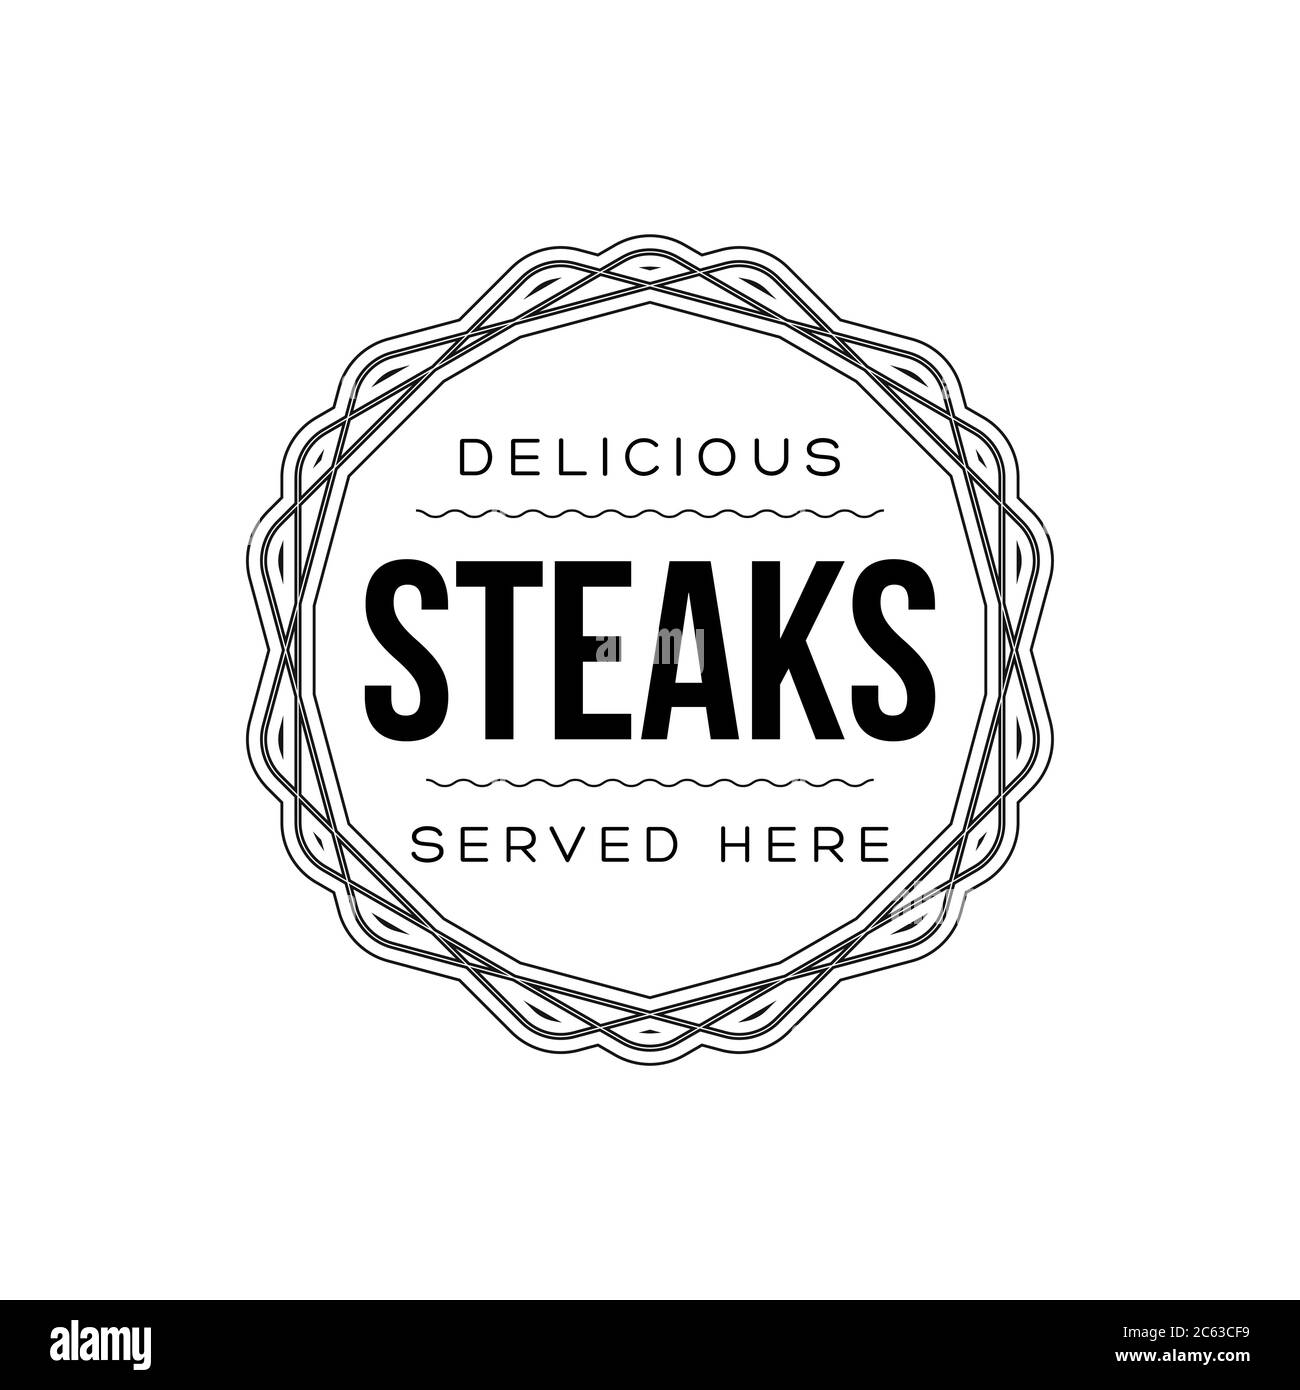 Food logo steaks vintage Stock Vector